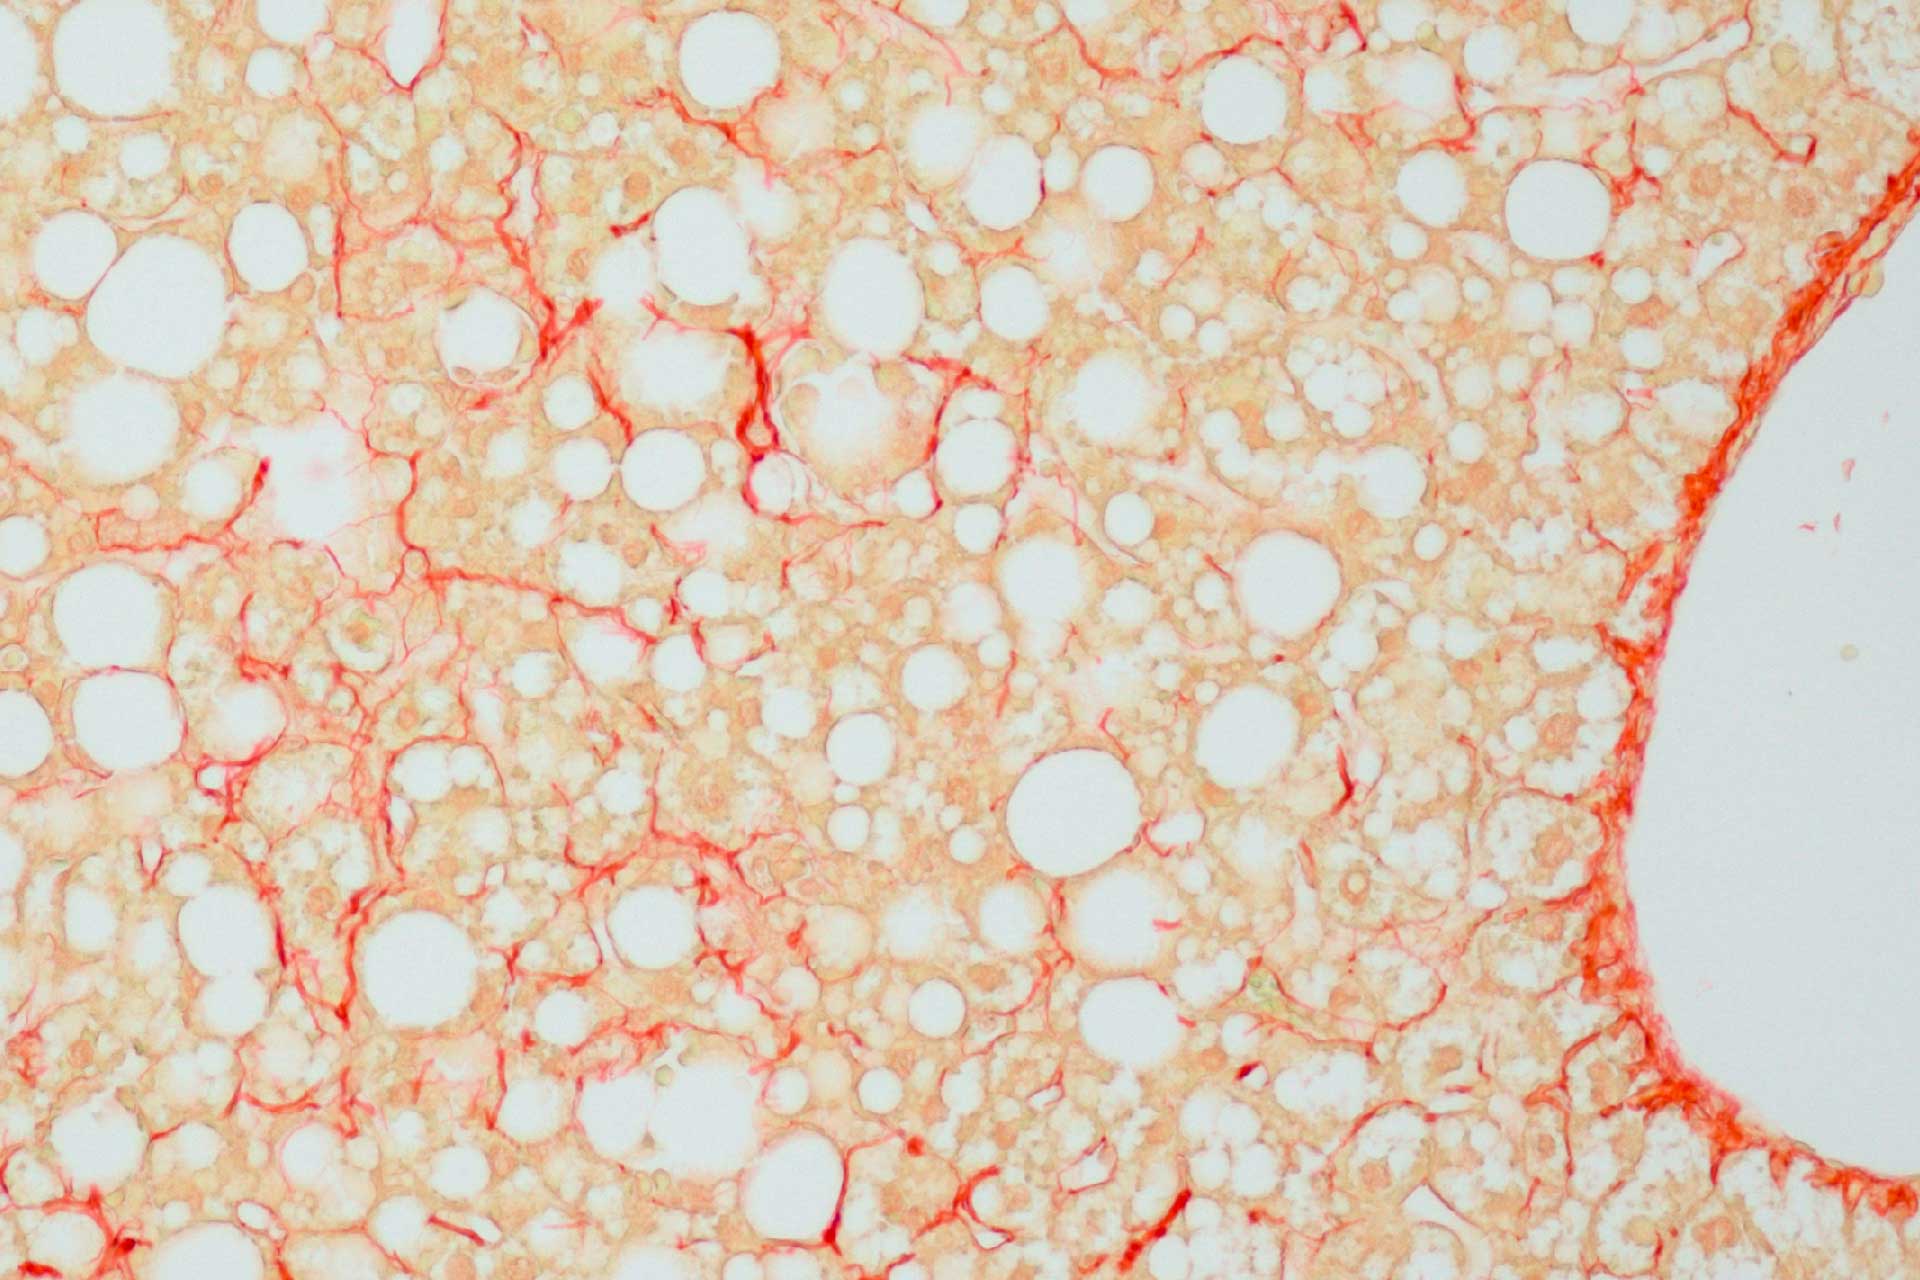 マウス肝臓と結合コラーゲン組織